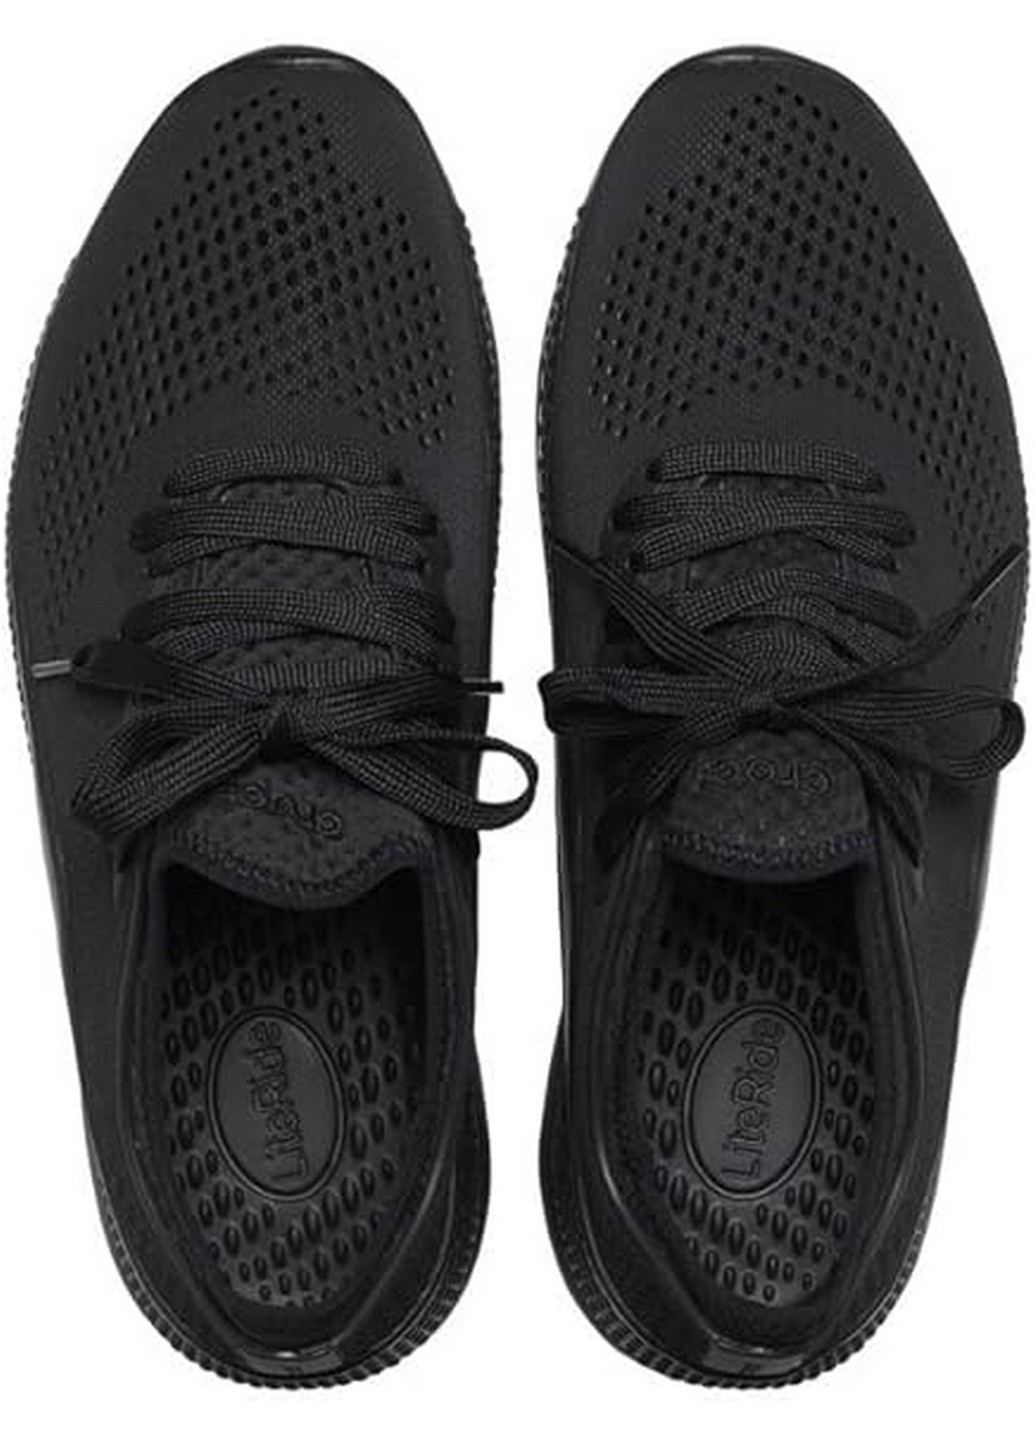 Черные демисезонные кроссовки крокс Crocs LiteRide 360 Pacer Black/Black